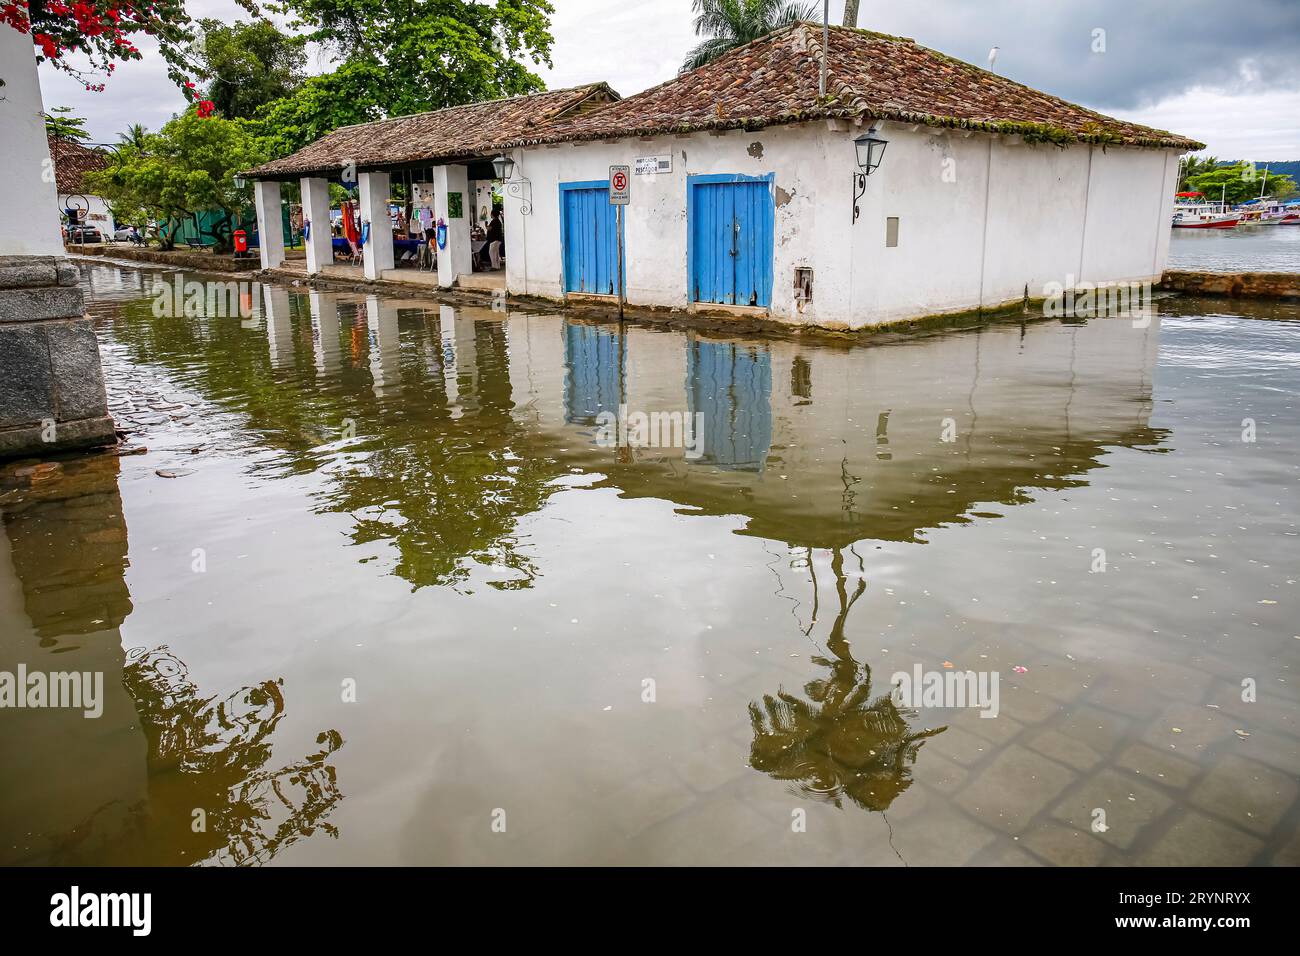 Strada tipica con edifici coloniali sott'acqua durante l'alta marea nella storica città di Paraty, Brasile, Foto Stock